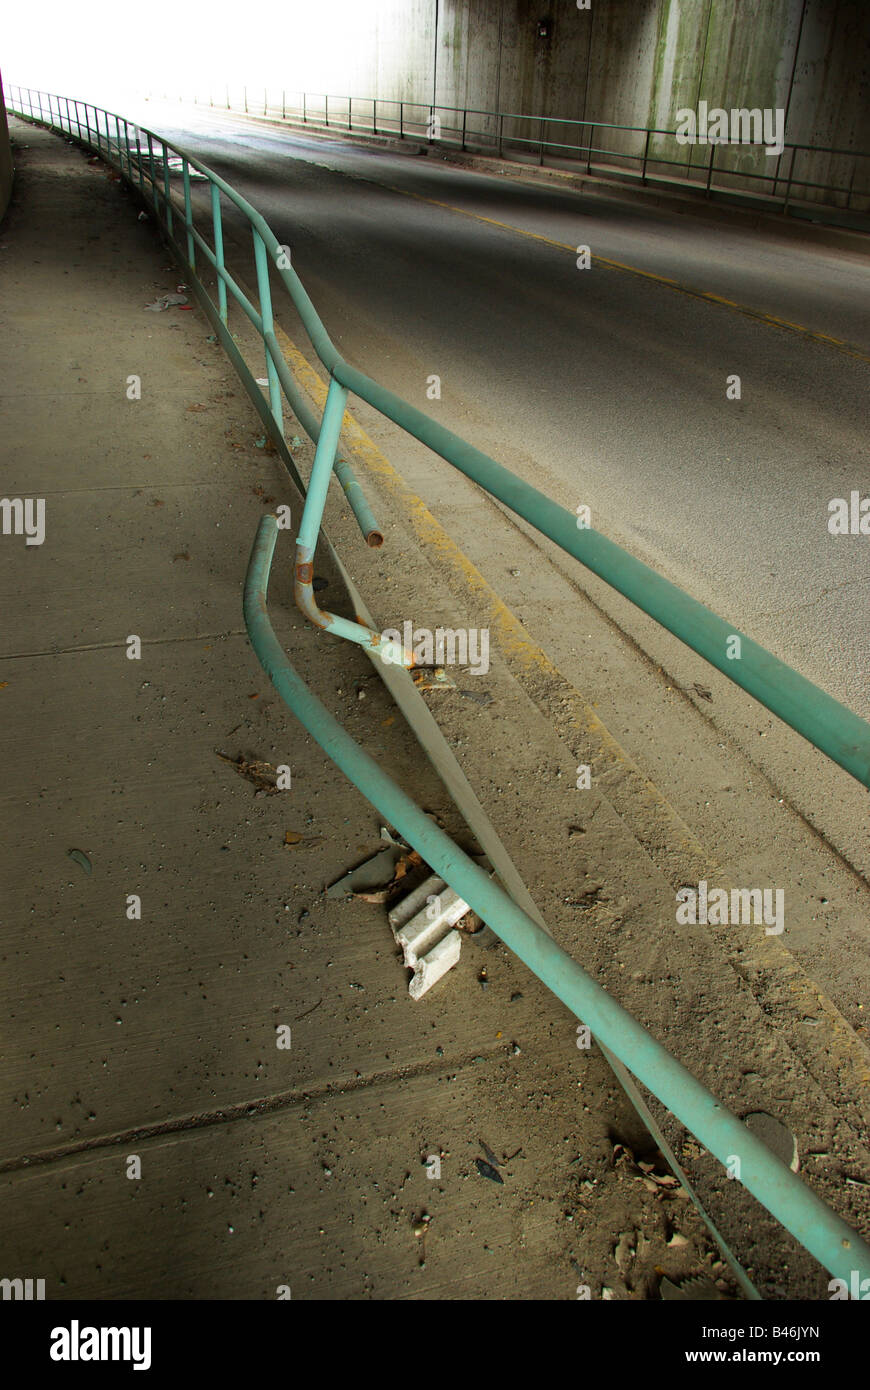 Dommages à une balustrade sur une zone piétonne sous un pont de chemin de fer d'un accident de voiture Banque D'Images